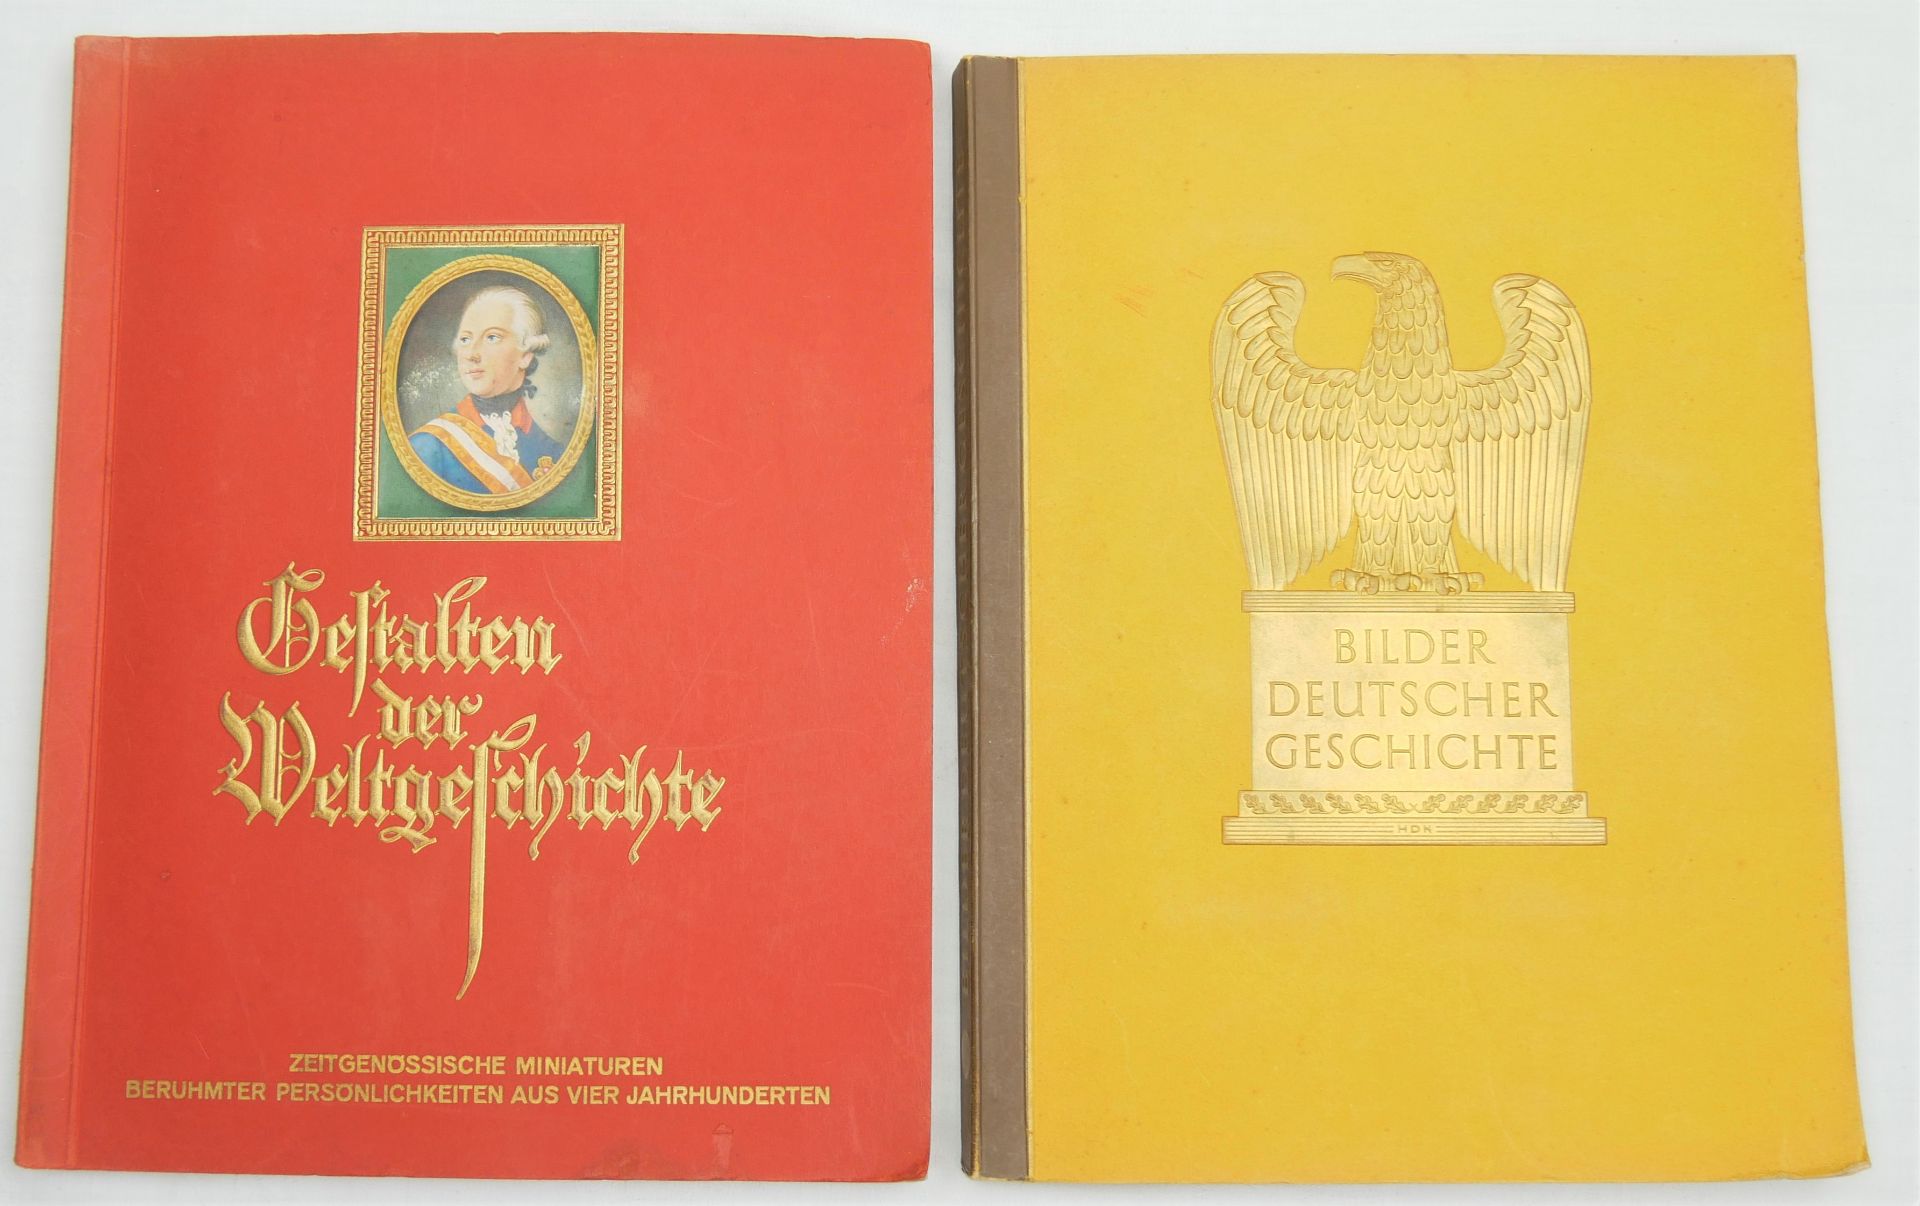 Bilder Deutscher Geschichte, Werk 12, 1936 sowie Gestalten der Weltgeschichte 1933. Herausgegeben